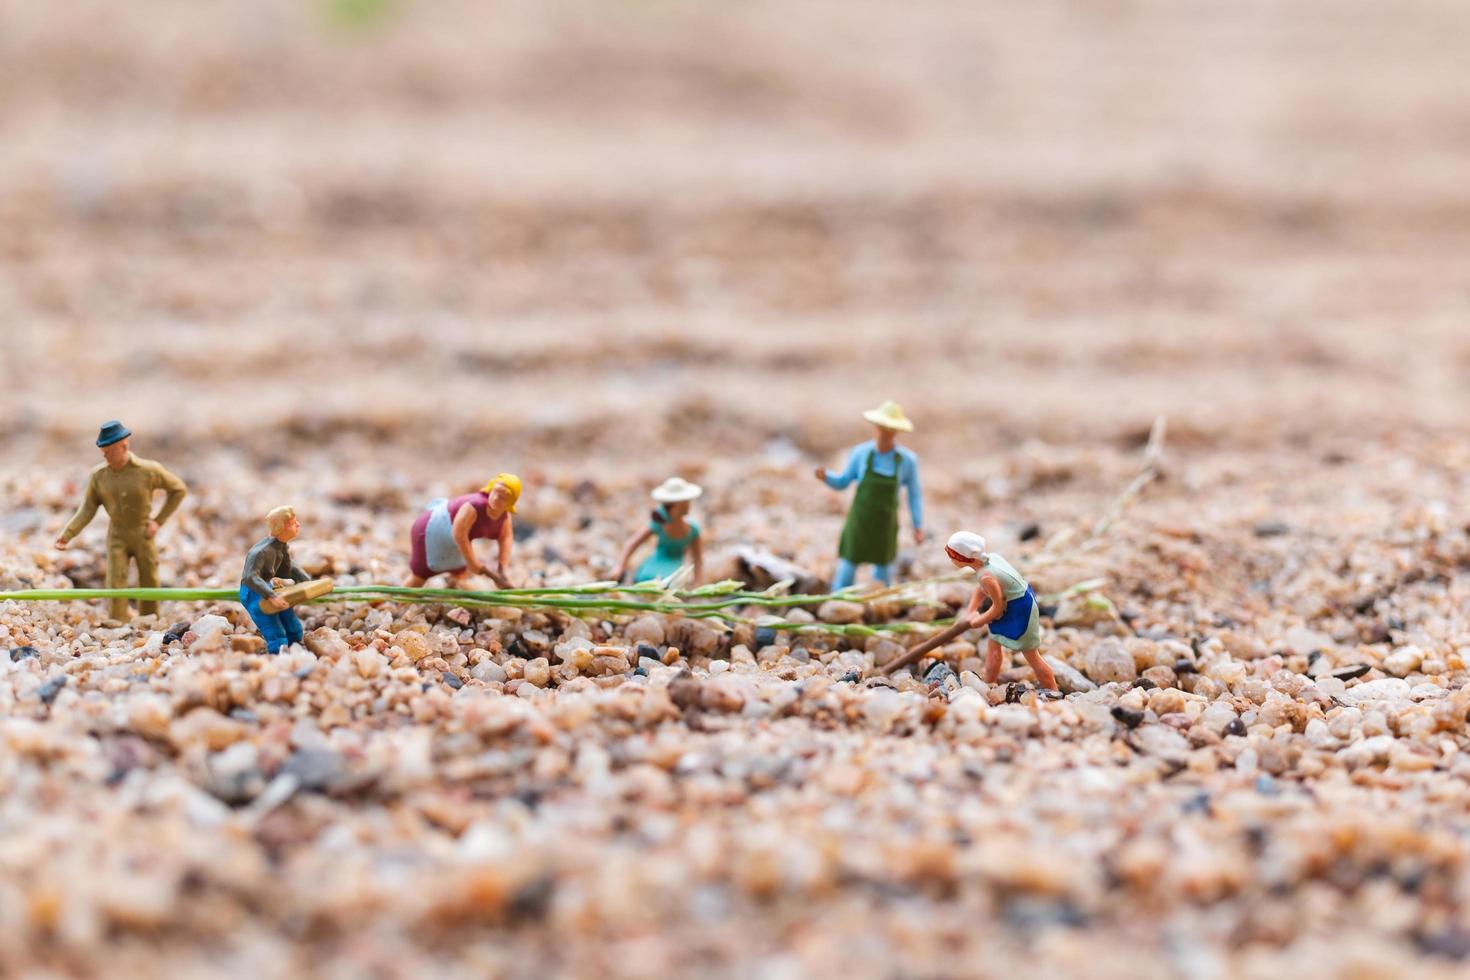 agriculteurs miniatures travaillant sur une parcelle dans le désert, concept de l'agriculture photo